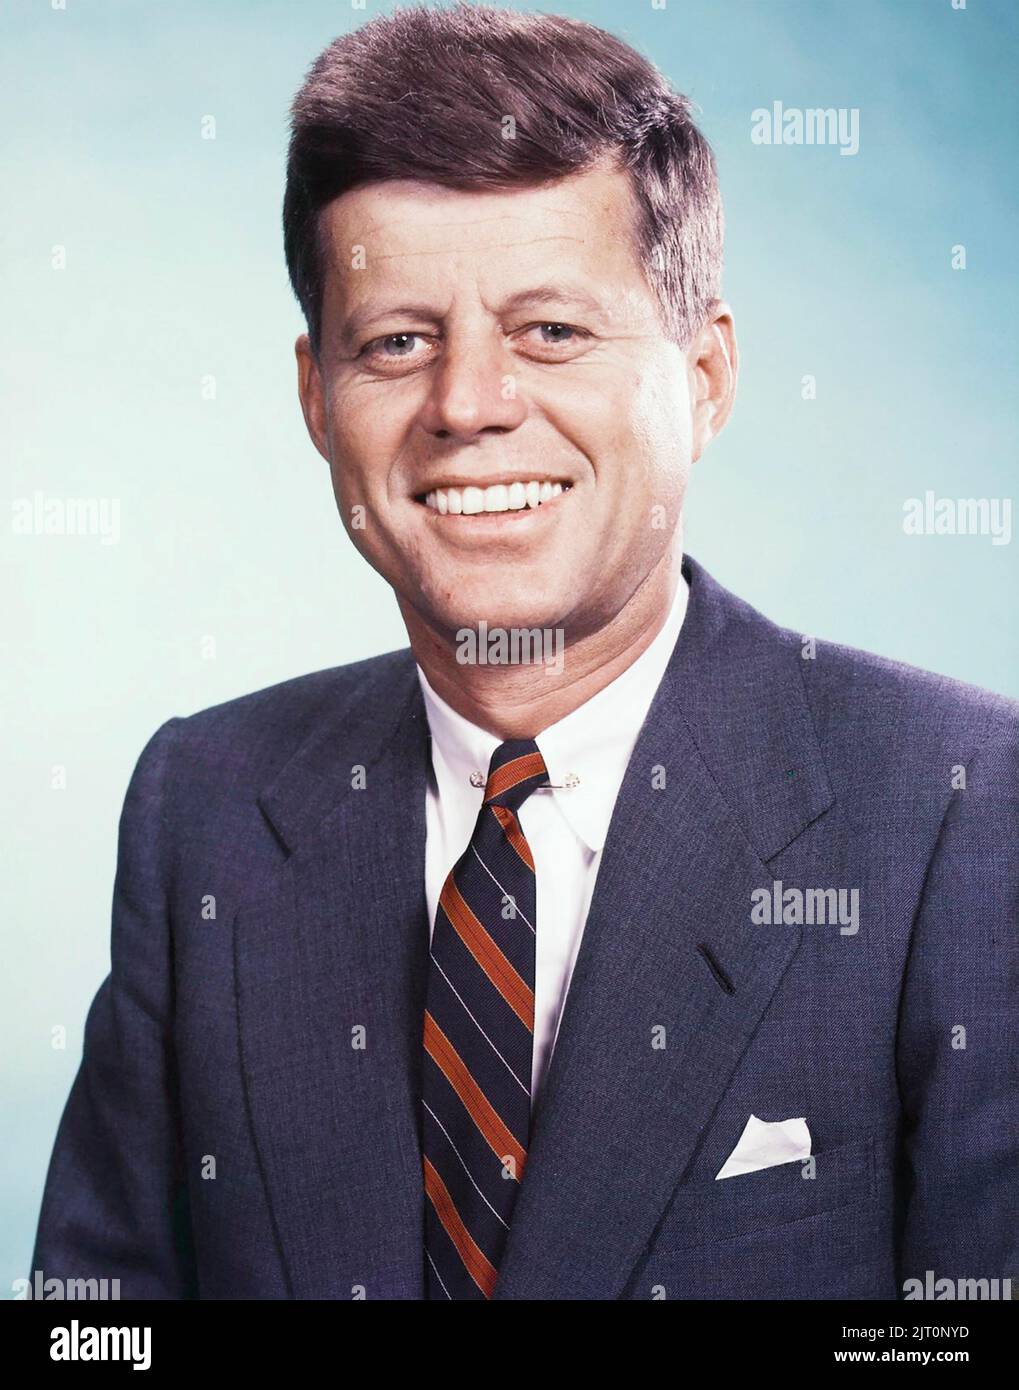 OHN F. KENNEDY (1917-1963) à la présidence des États-Unis en 1963 Banque D'Images